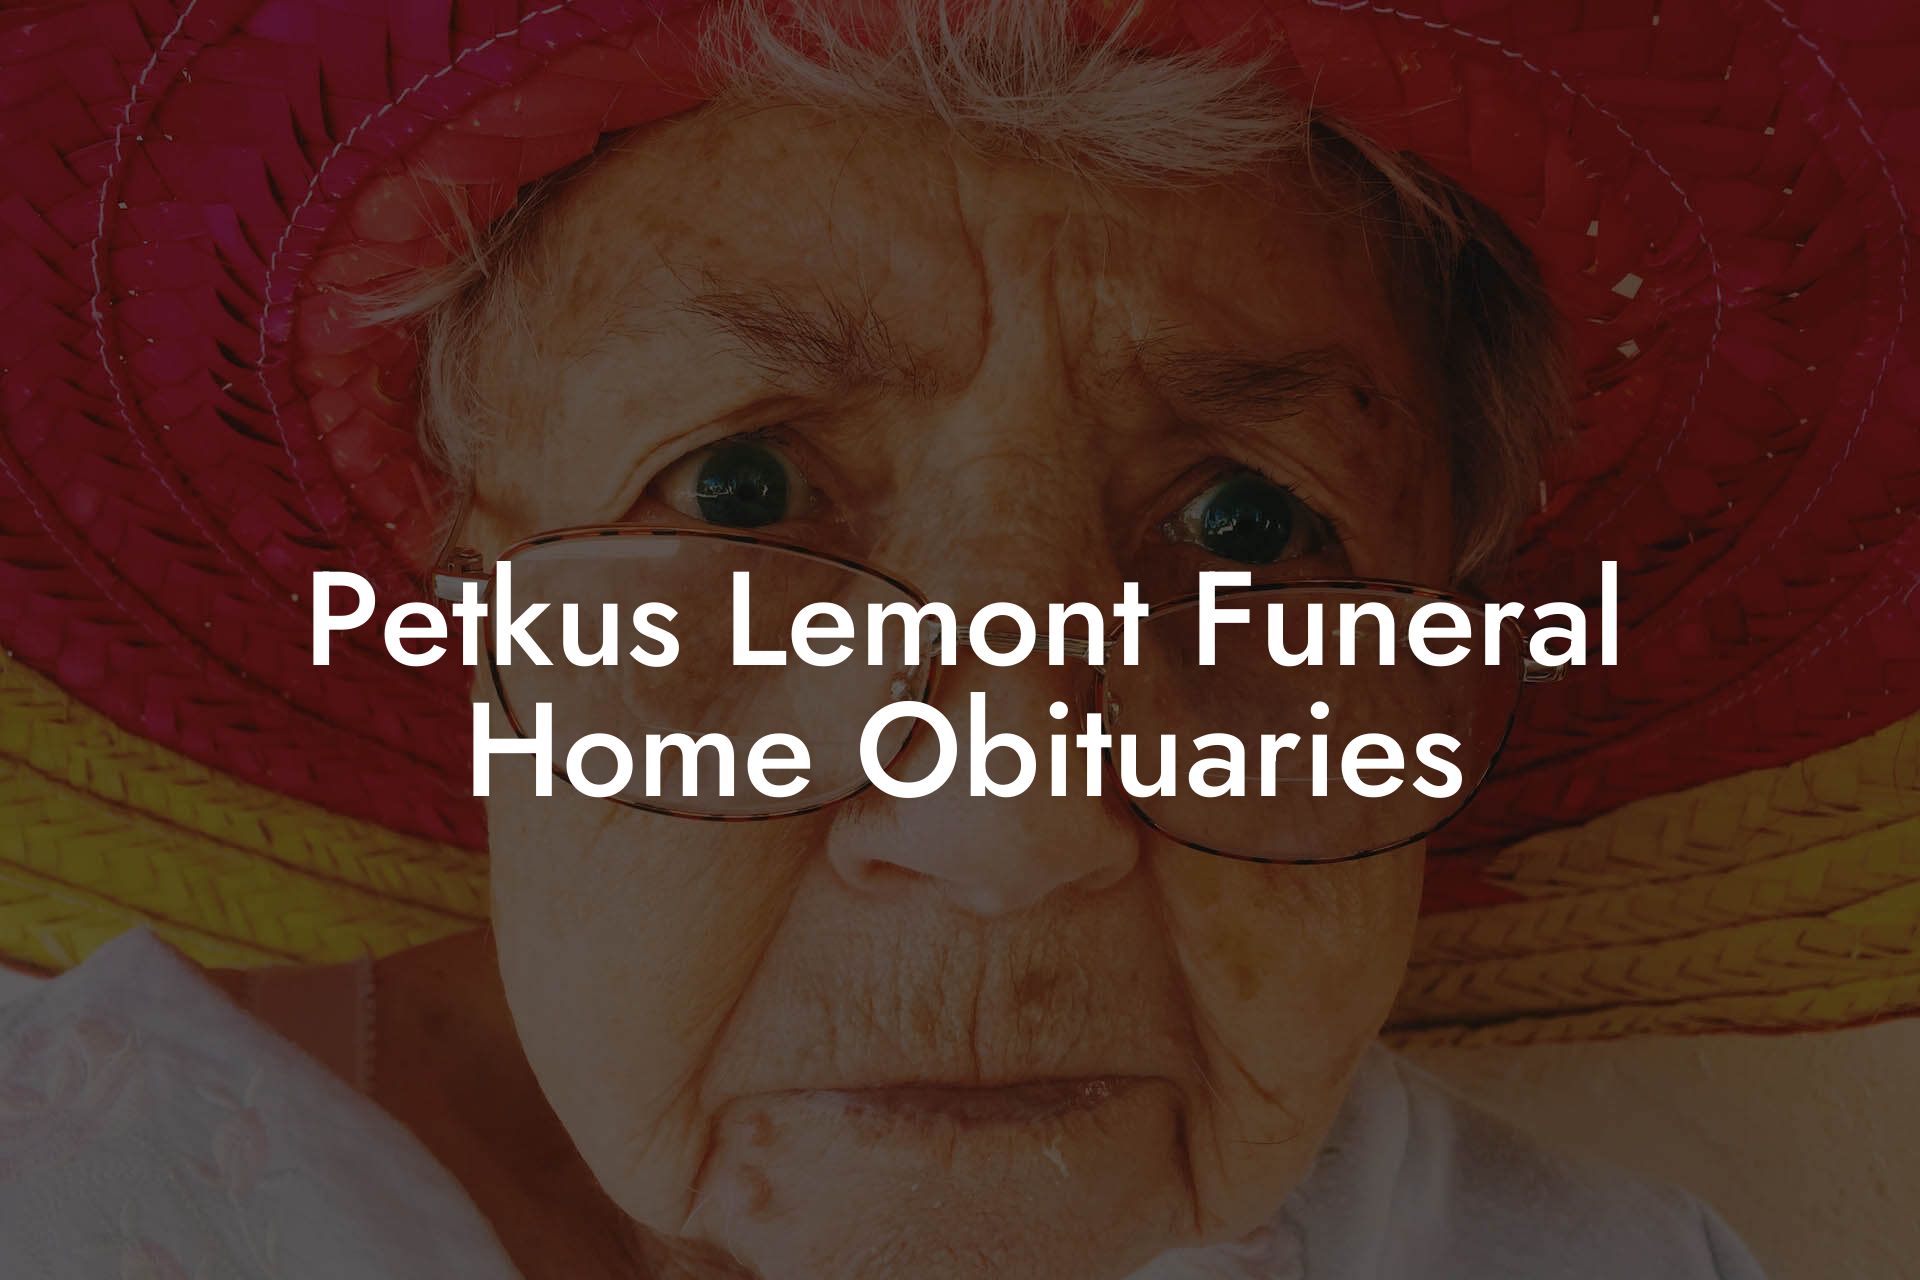 Petkus Lemont Funeral Home Obituaries